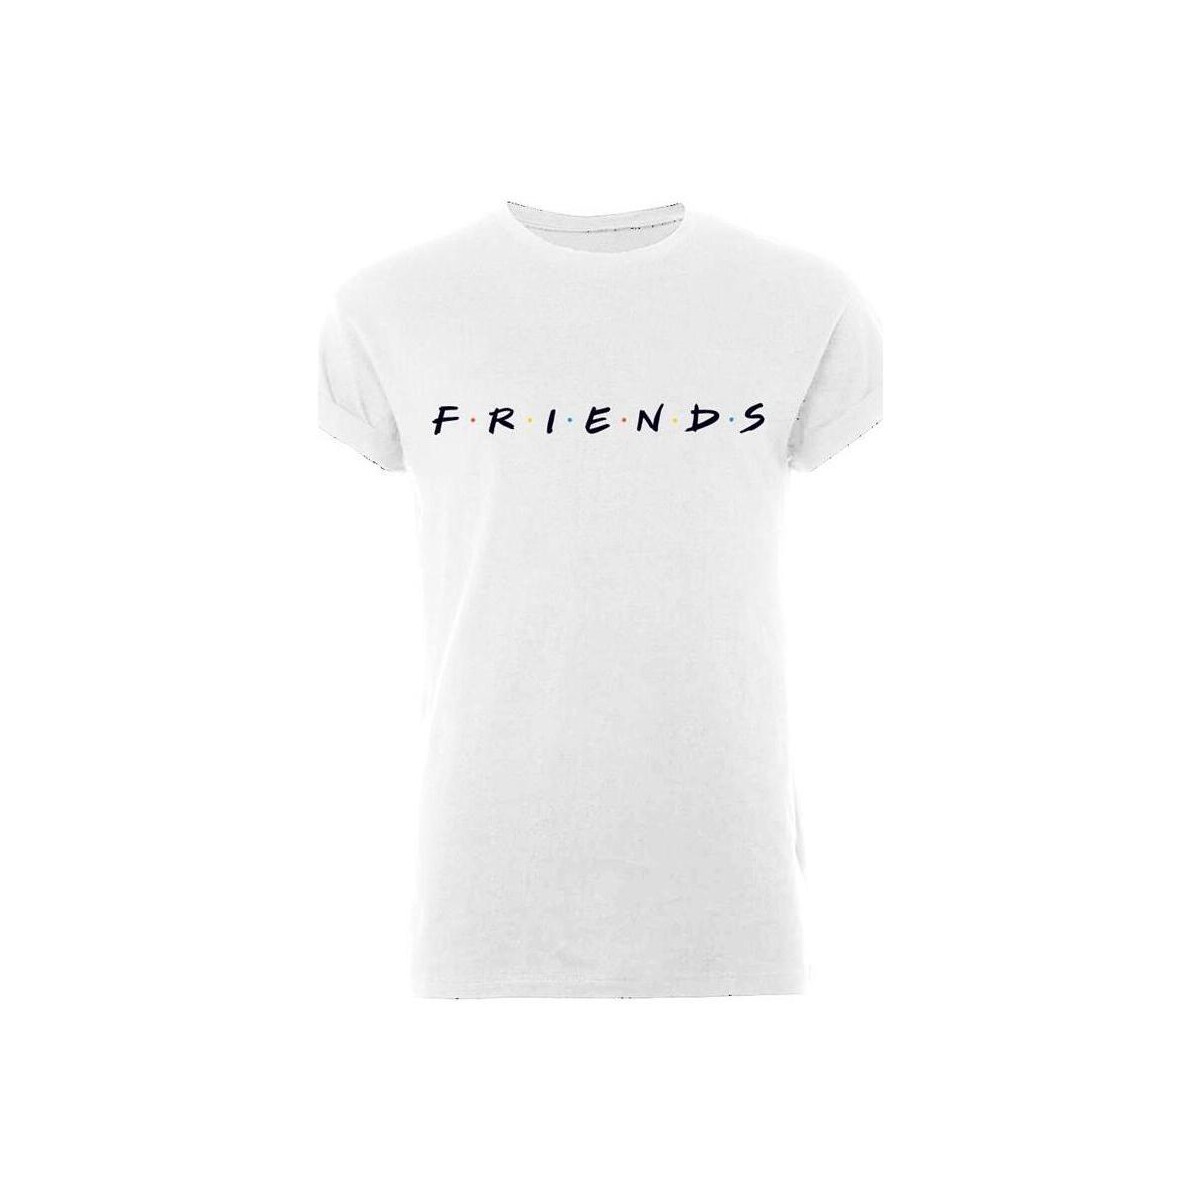 Vêtements T-shirts manches longues Friends  Blanc